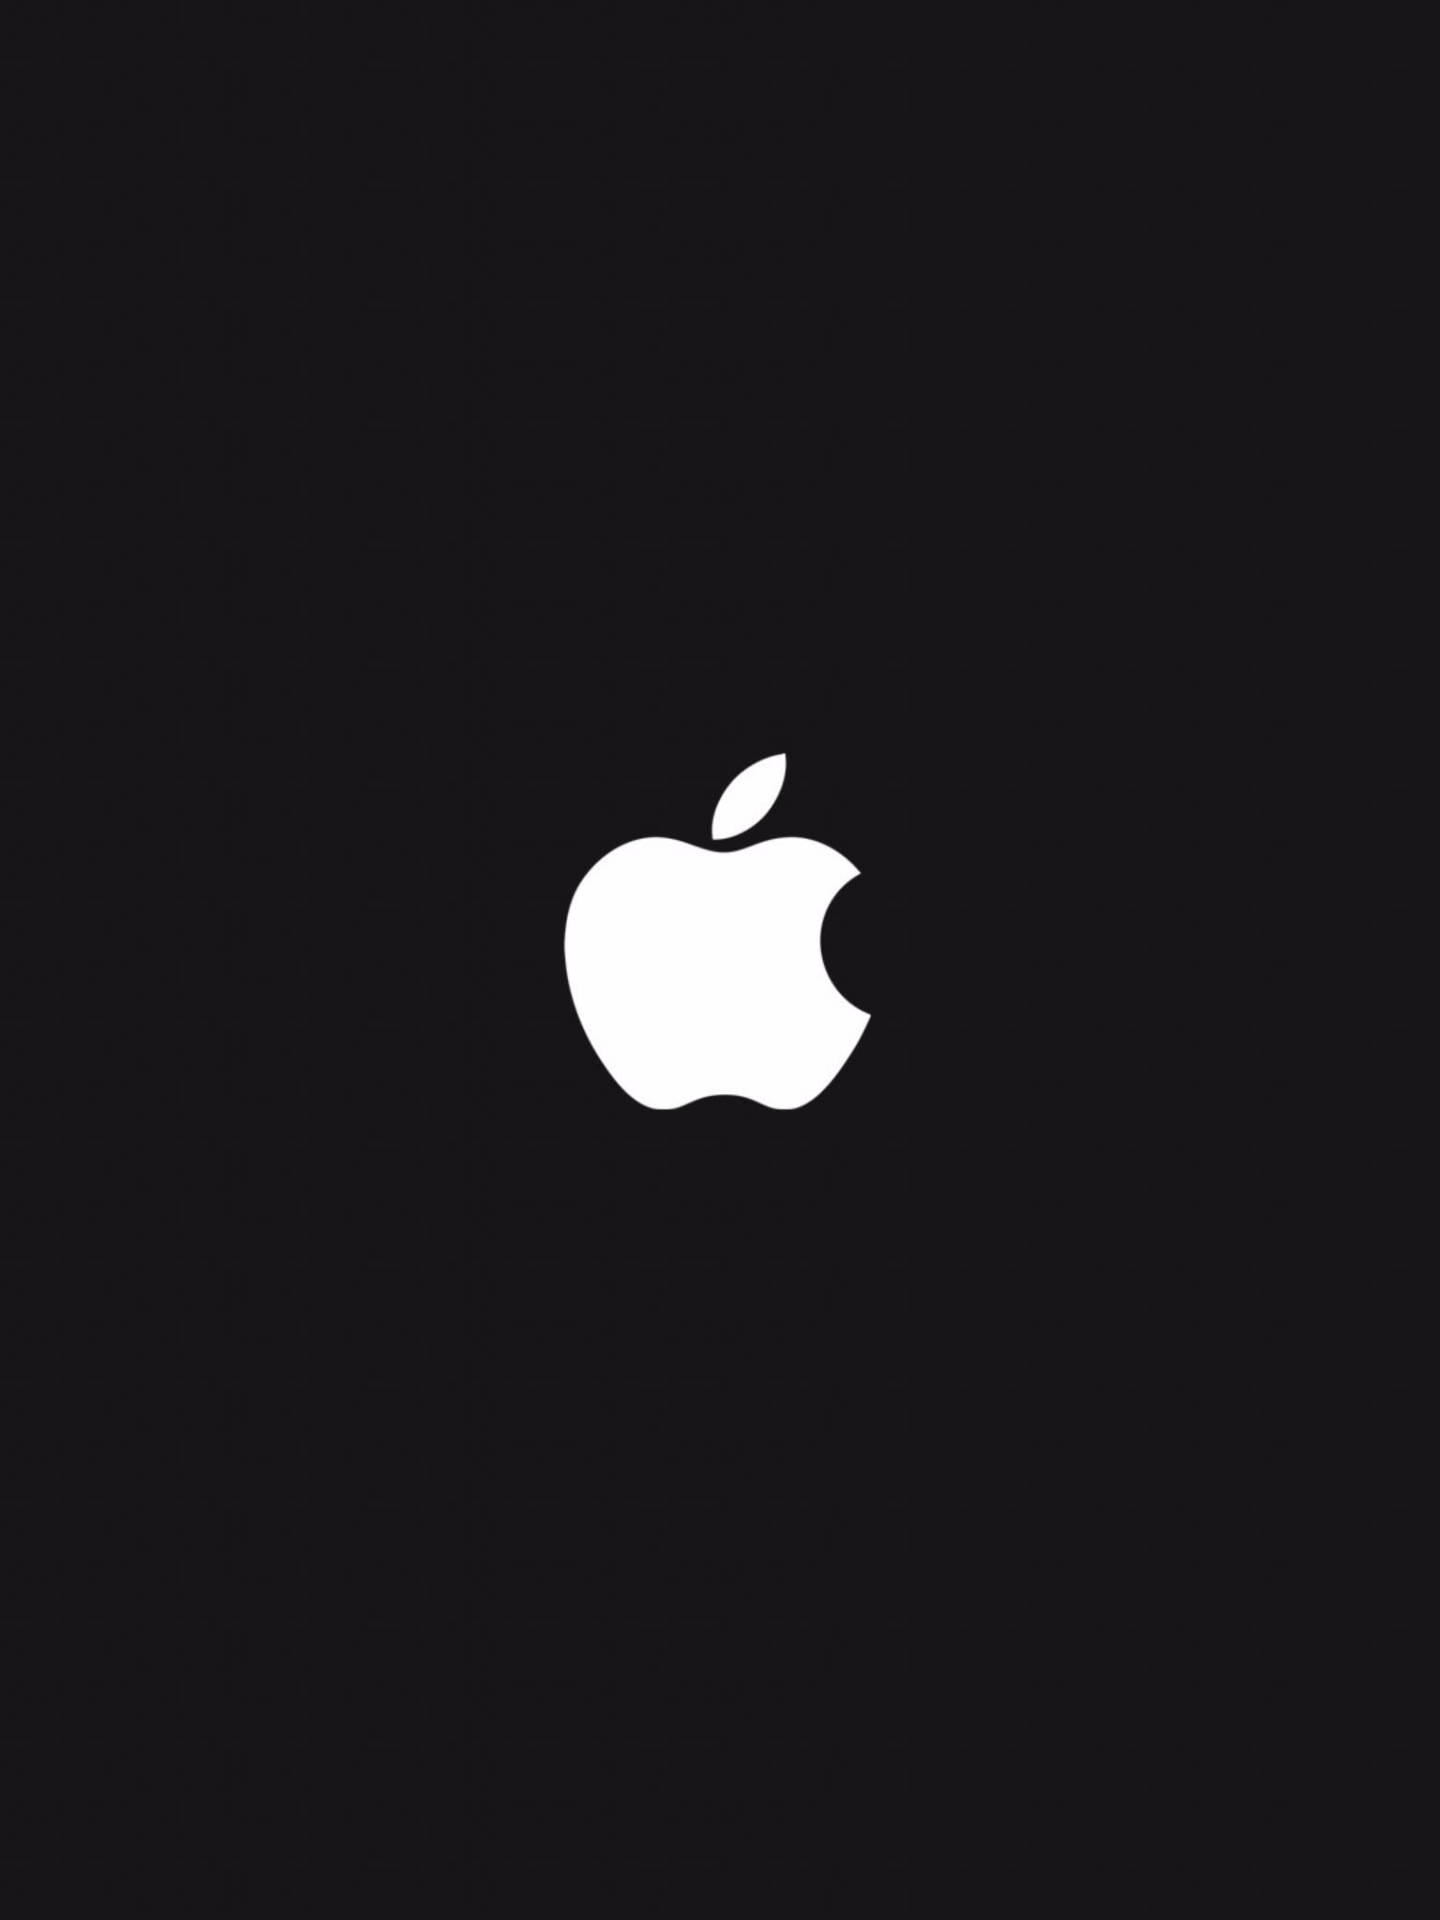 White Apple Logo 4k